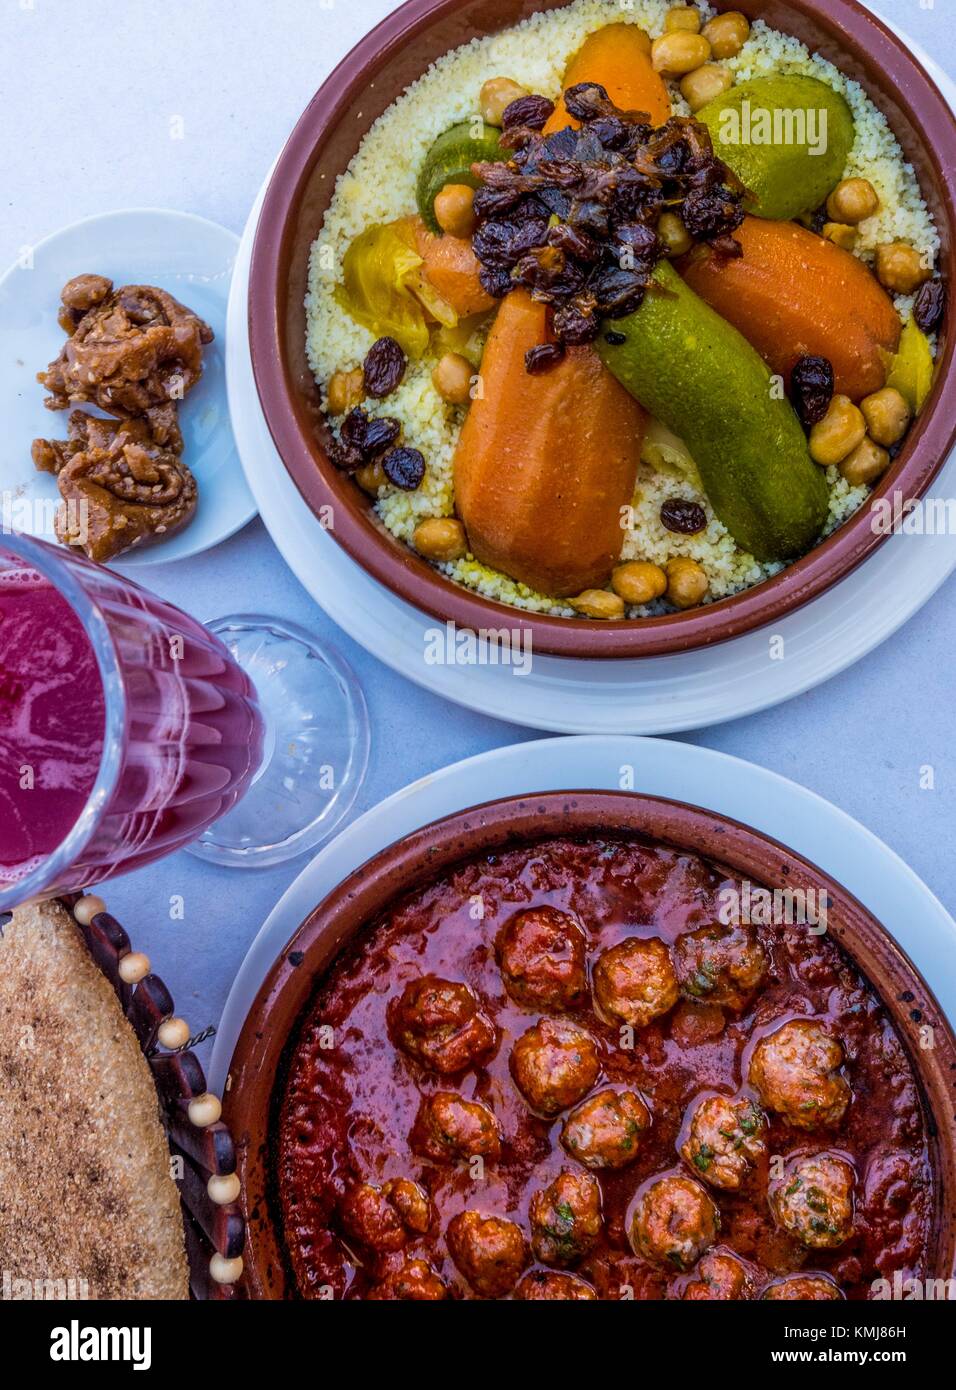 Le Maroc, de l'alimentation, 'Kesra' du pain, du jus de grenade. 'Chebakia gâteau miel doux', 'tajine Kefta (boulettes de viande hachée" tagine) et 'Couscous'. Banque D'Images